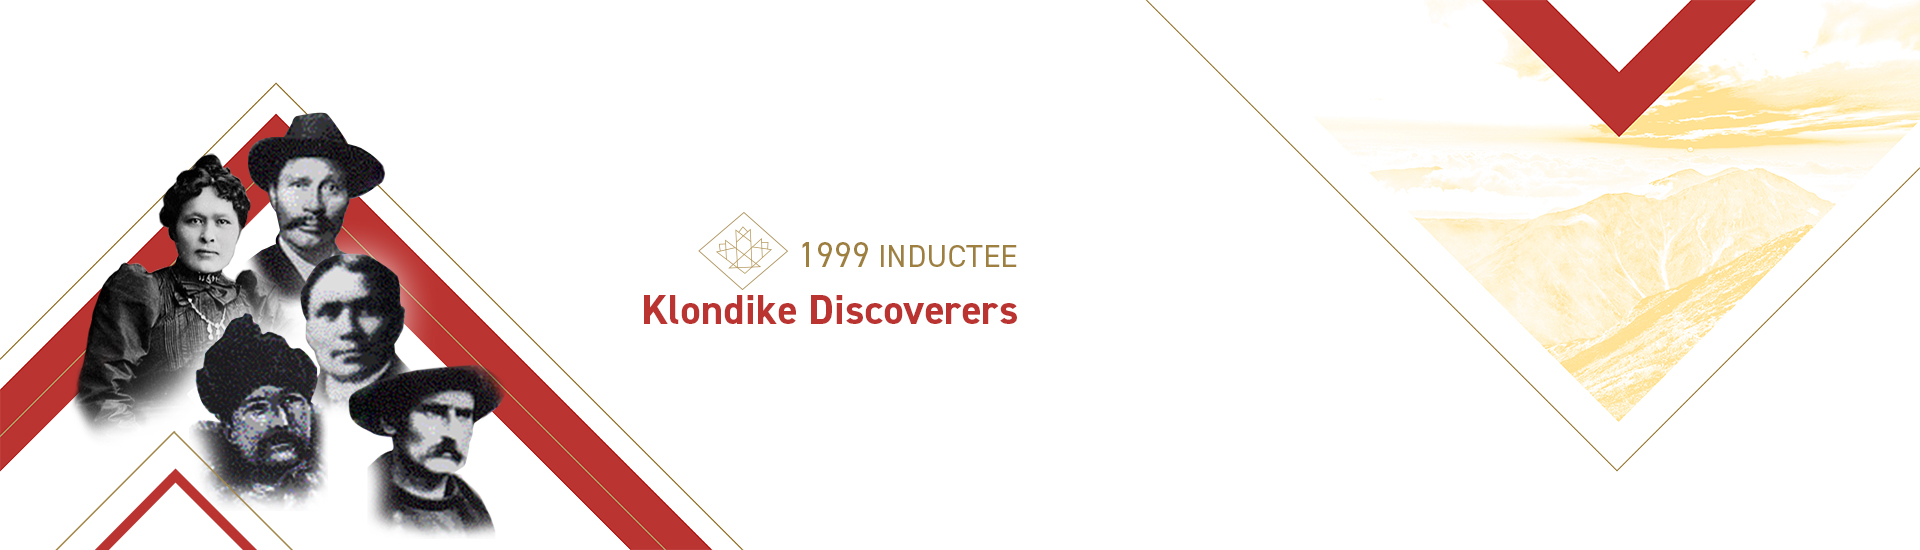 Les découvreurs du Klondike